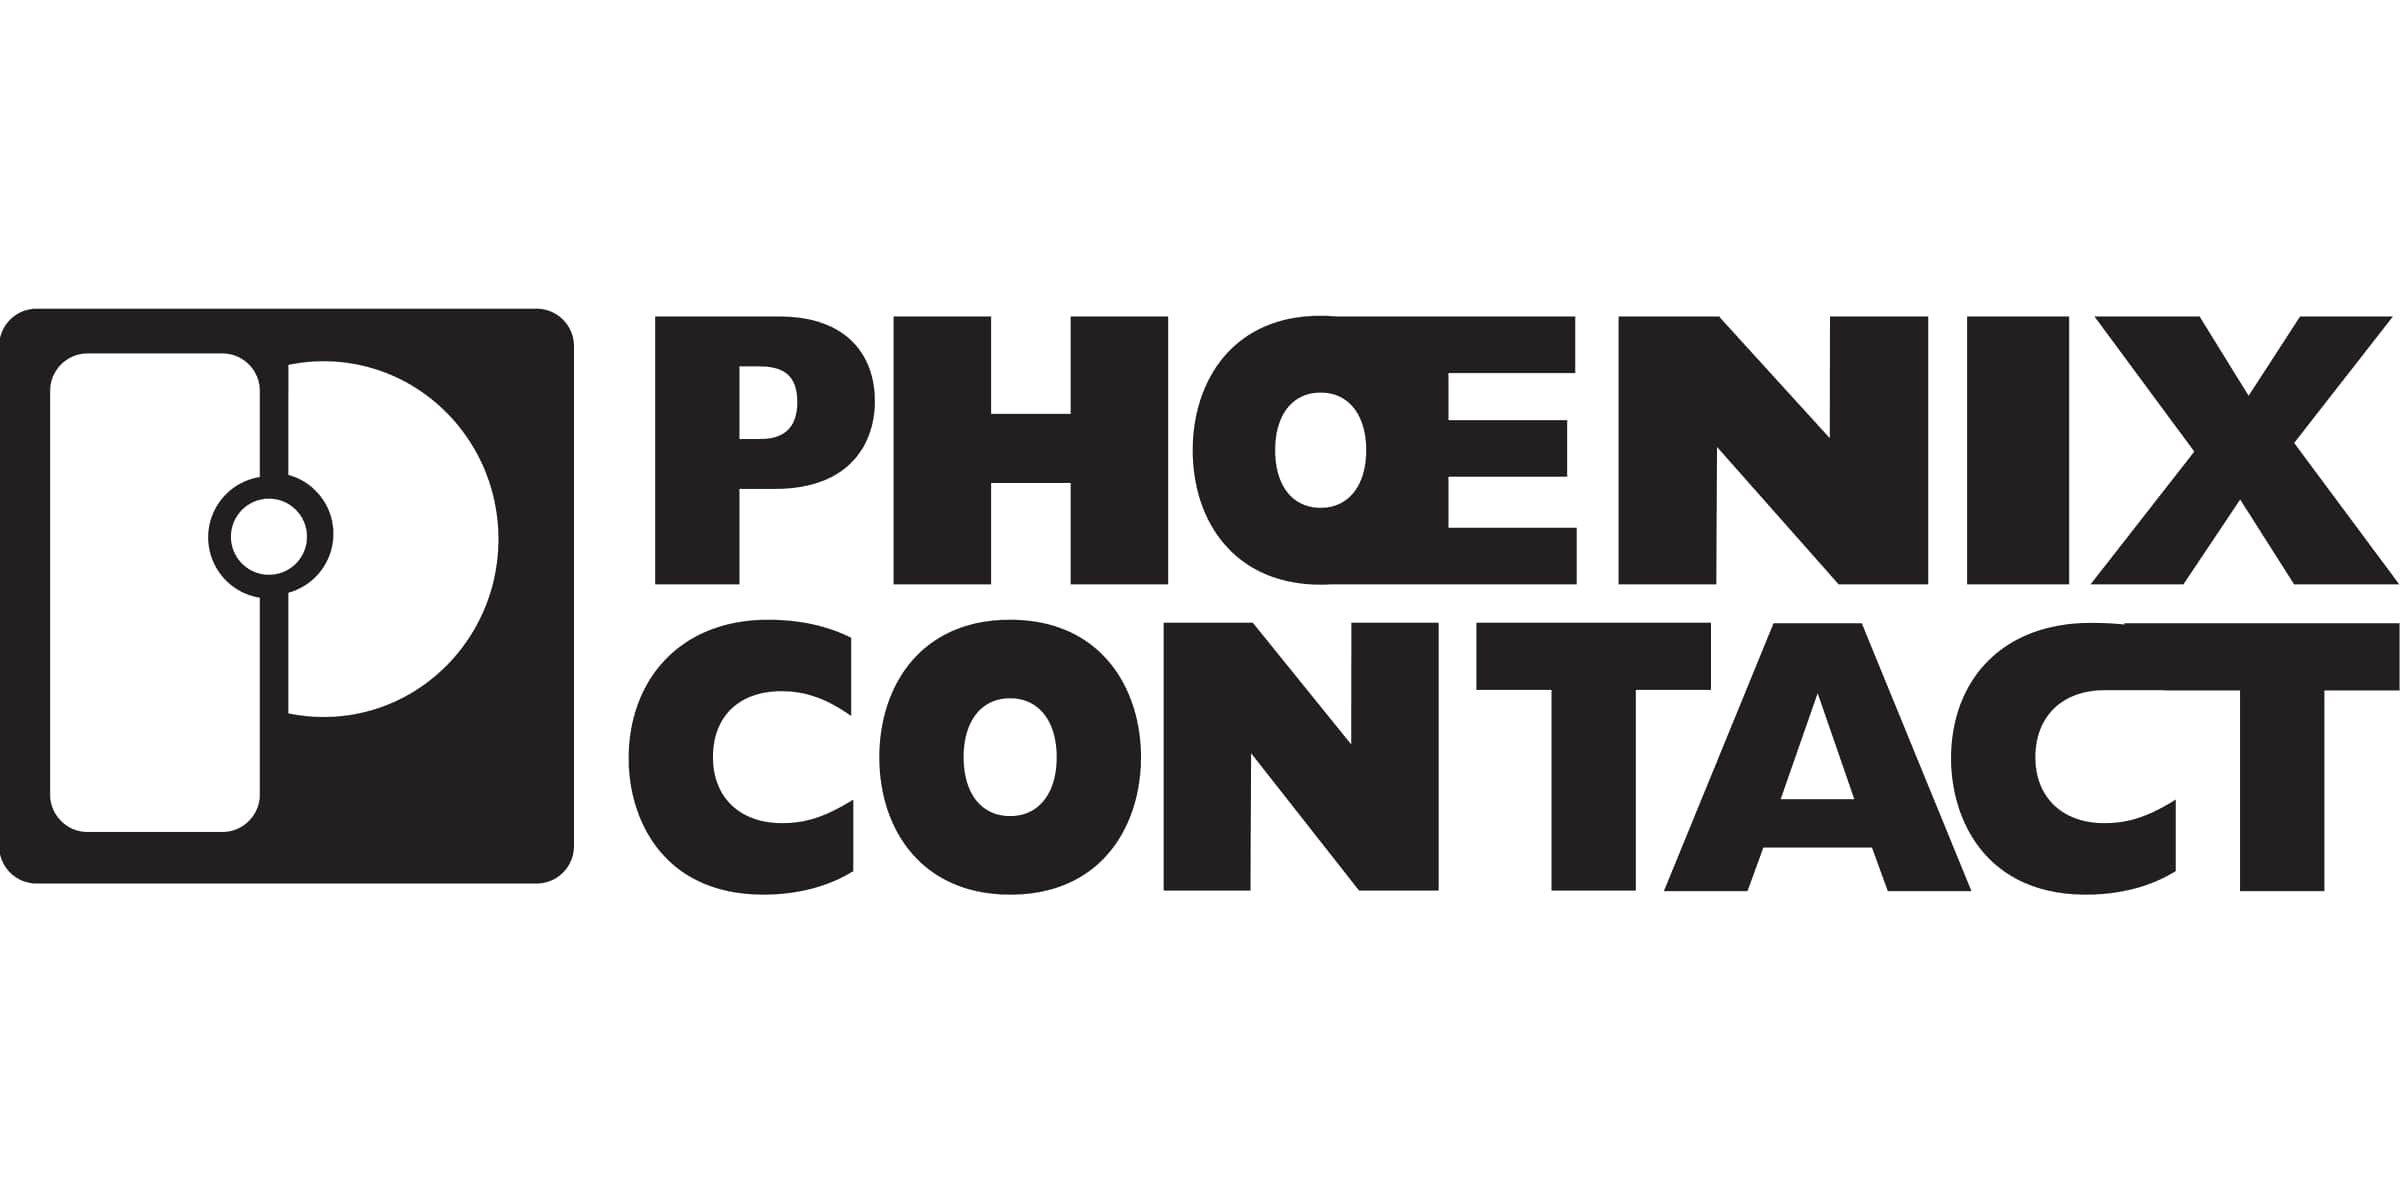 Phonex Contact